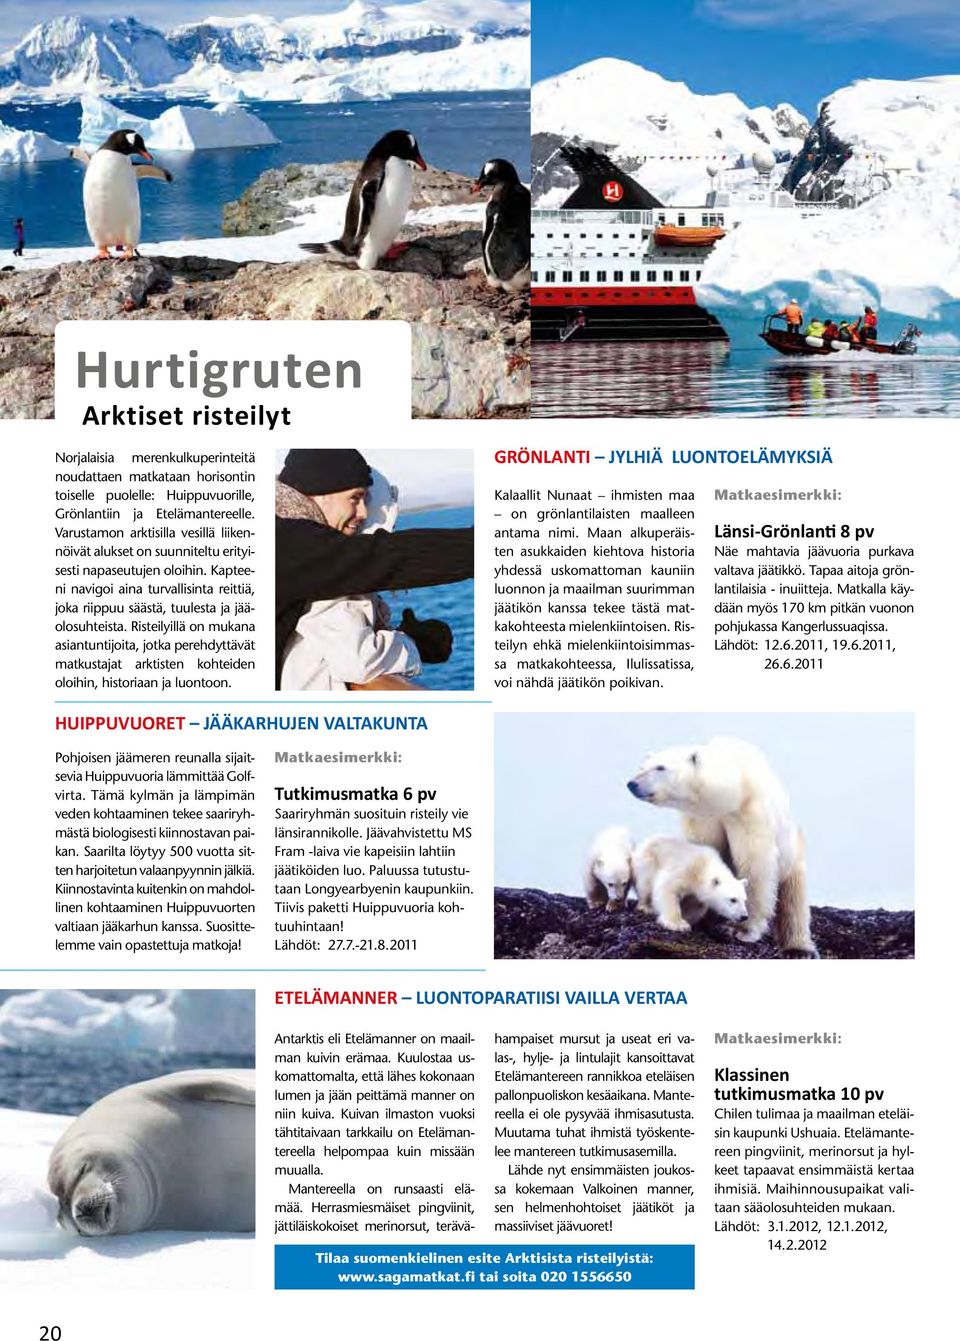 Risteilyillä on mukana asiantuntijoita, jotka perehdyttävät matkustajat arktisten kohteiden oloihin, historiaan ja luontoon.